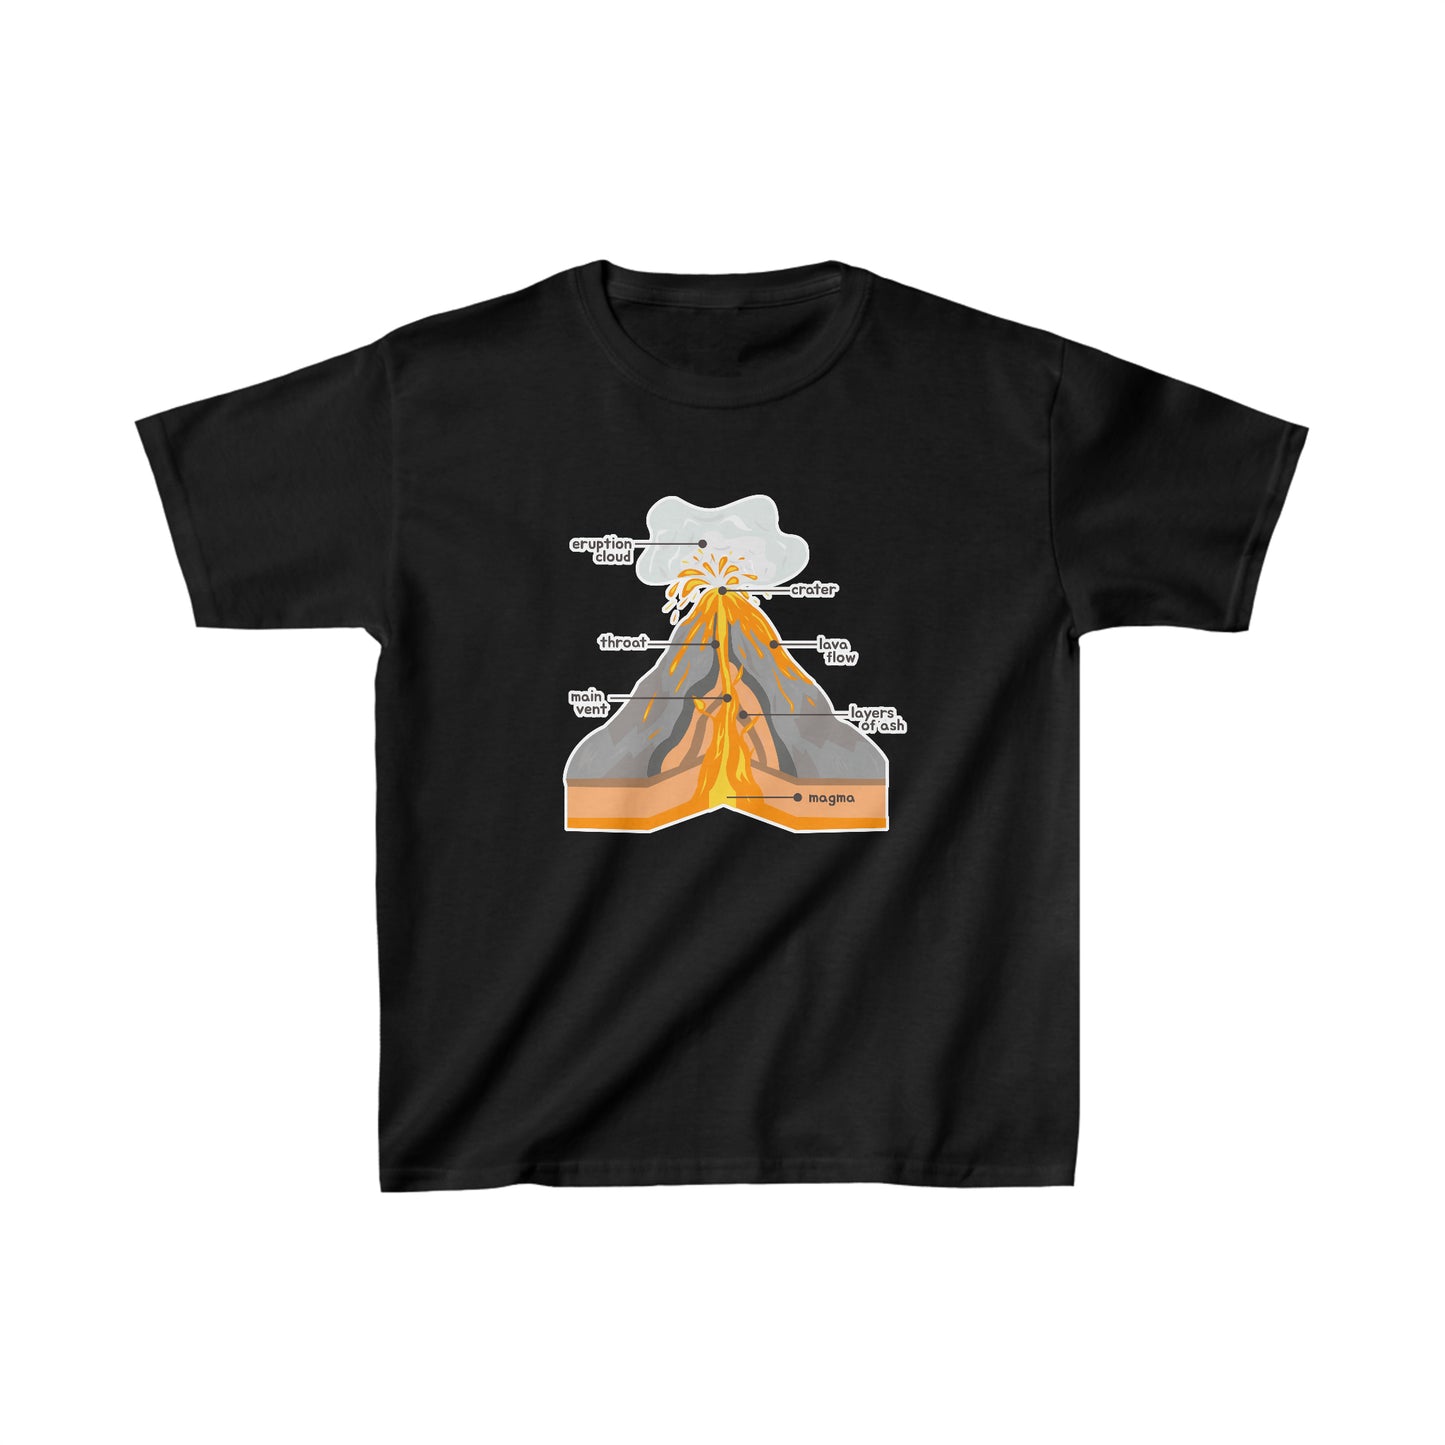 Volcano and Parts Tshirt